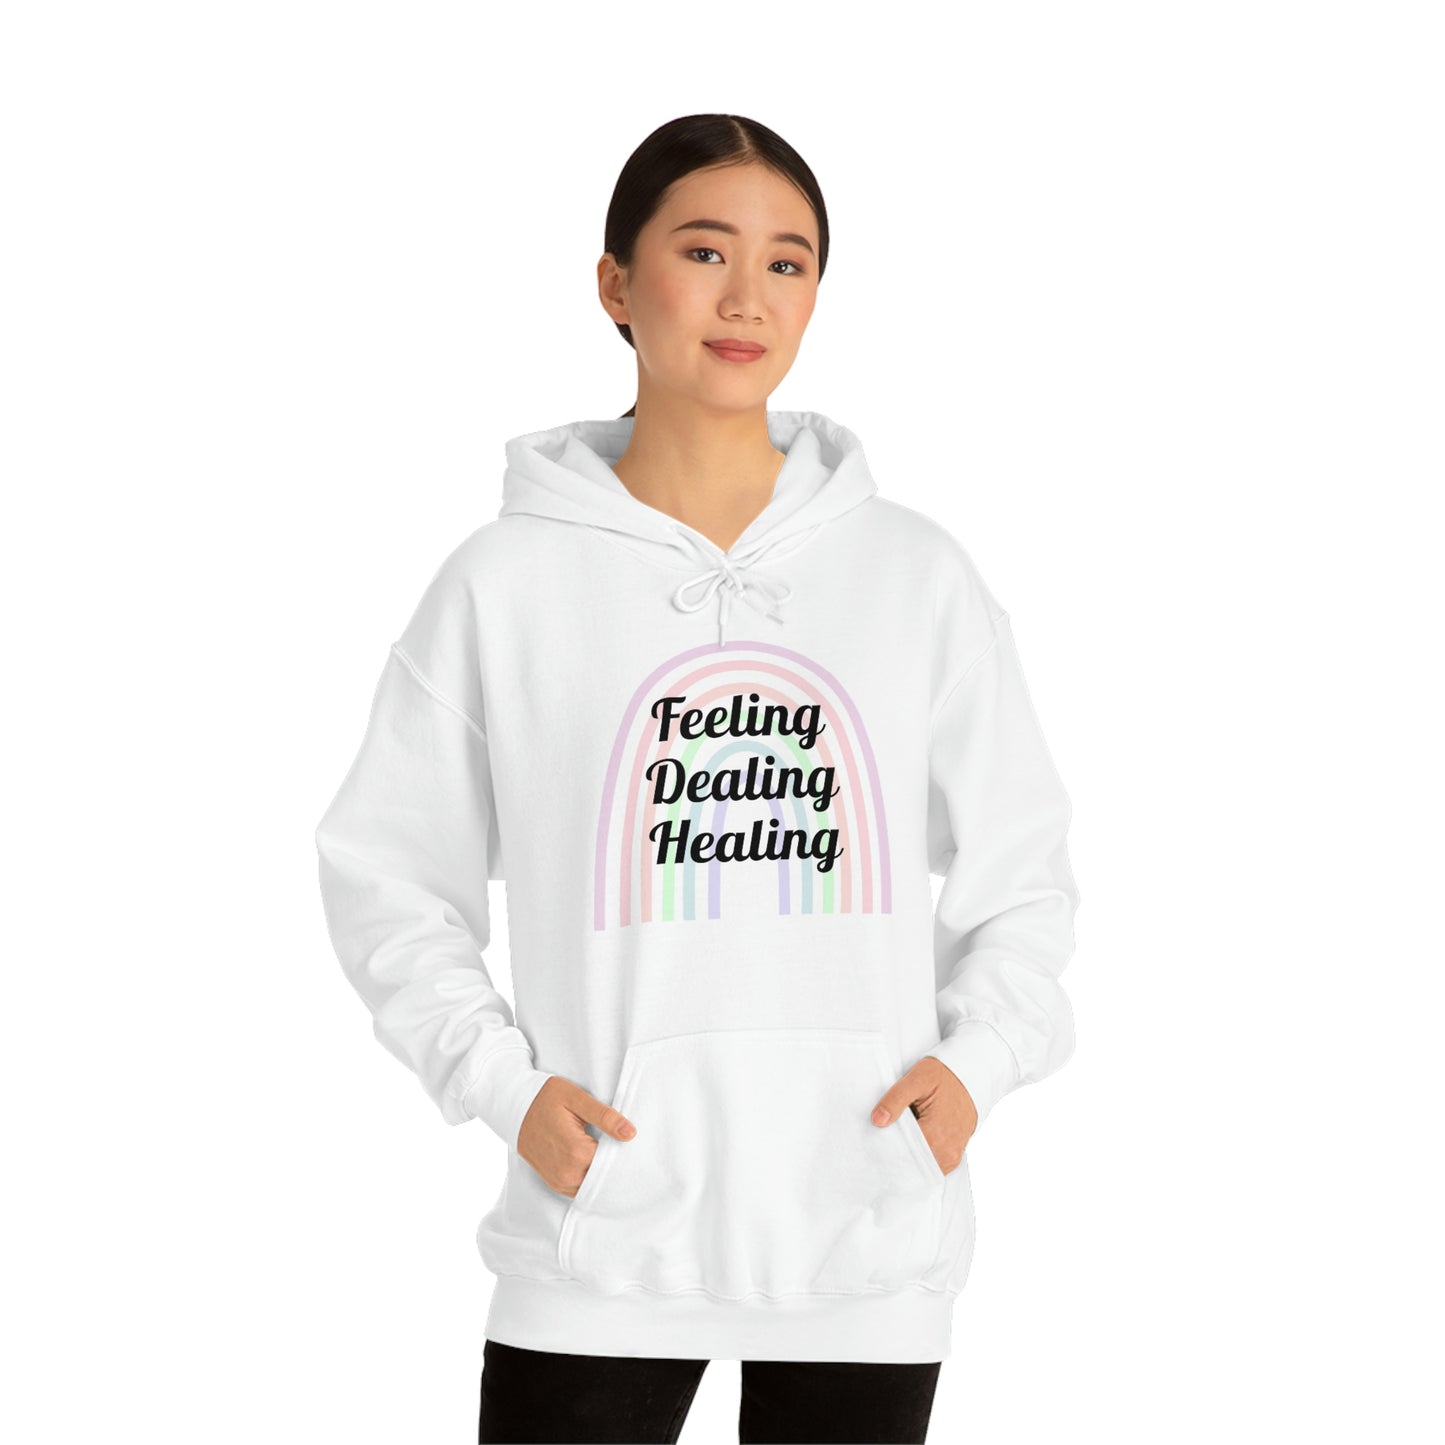 Feeling Dealing Healing Unisex Heavy Blend™ Hooded Sweatshirt